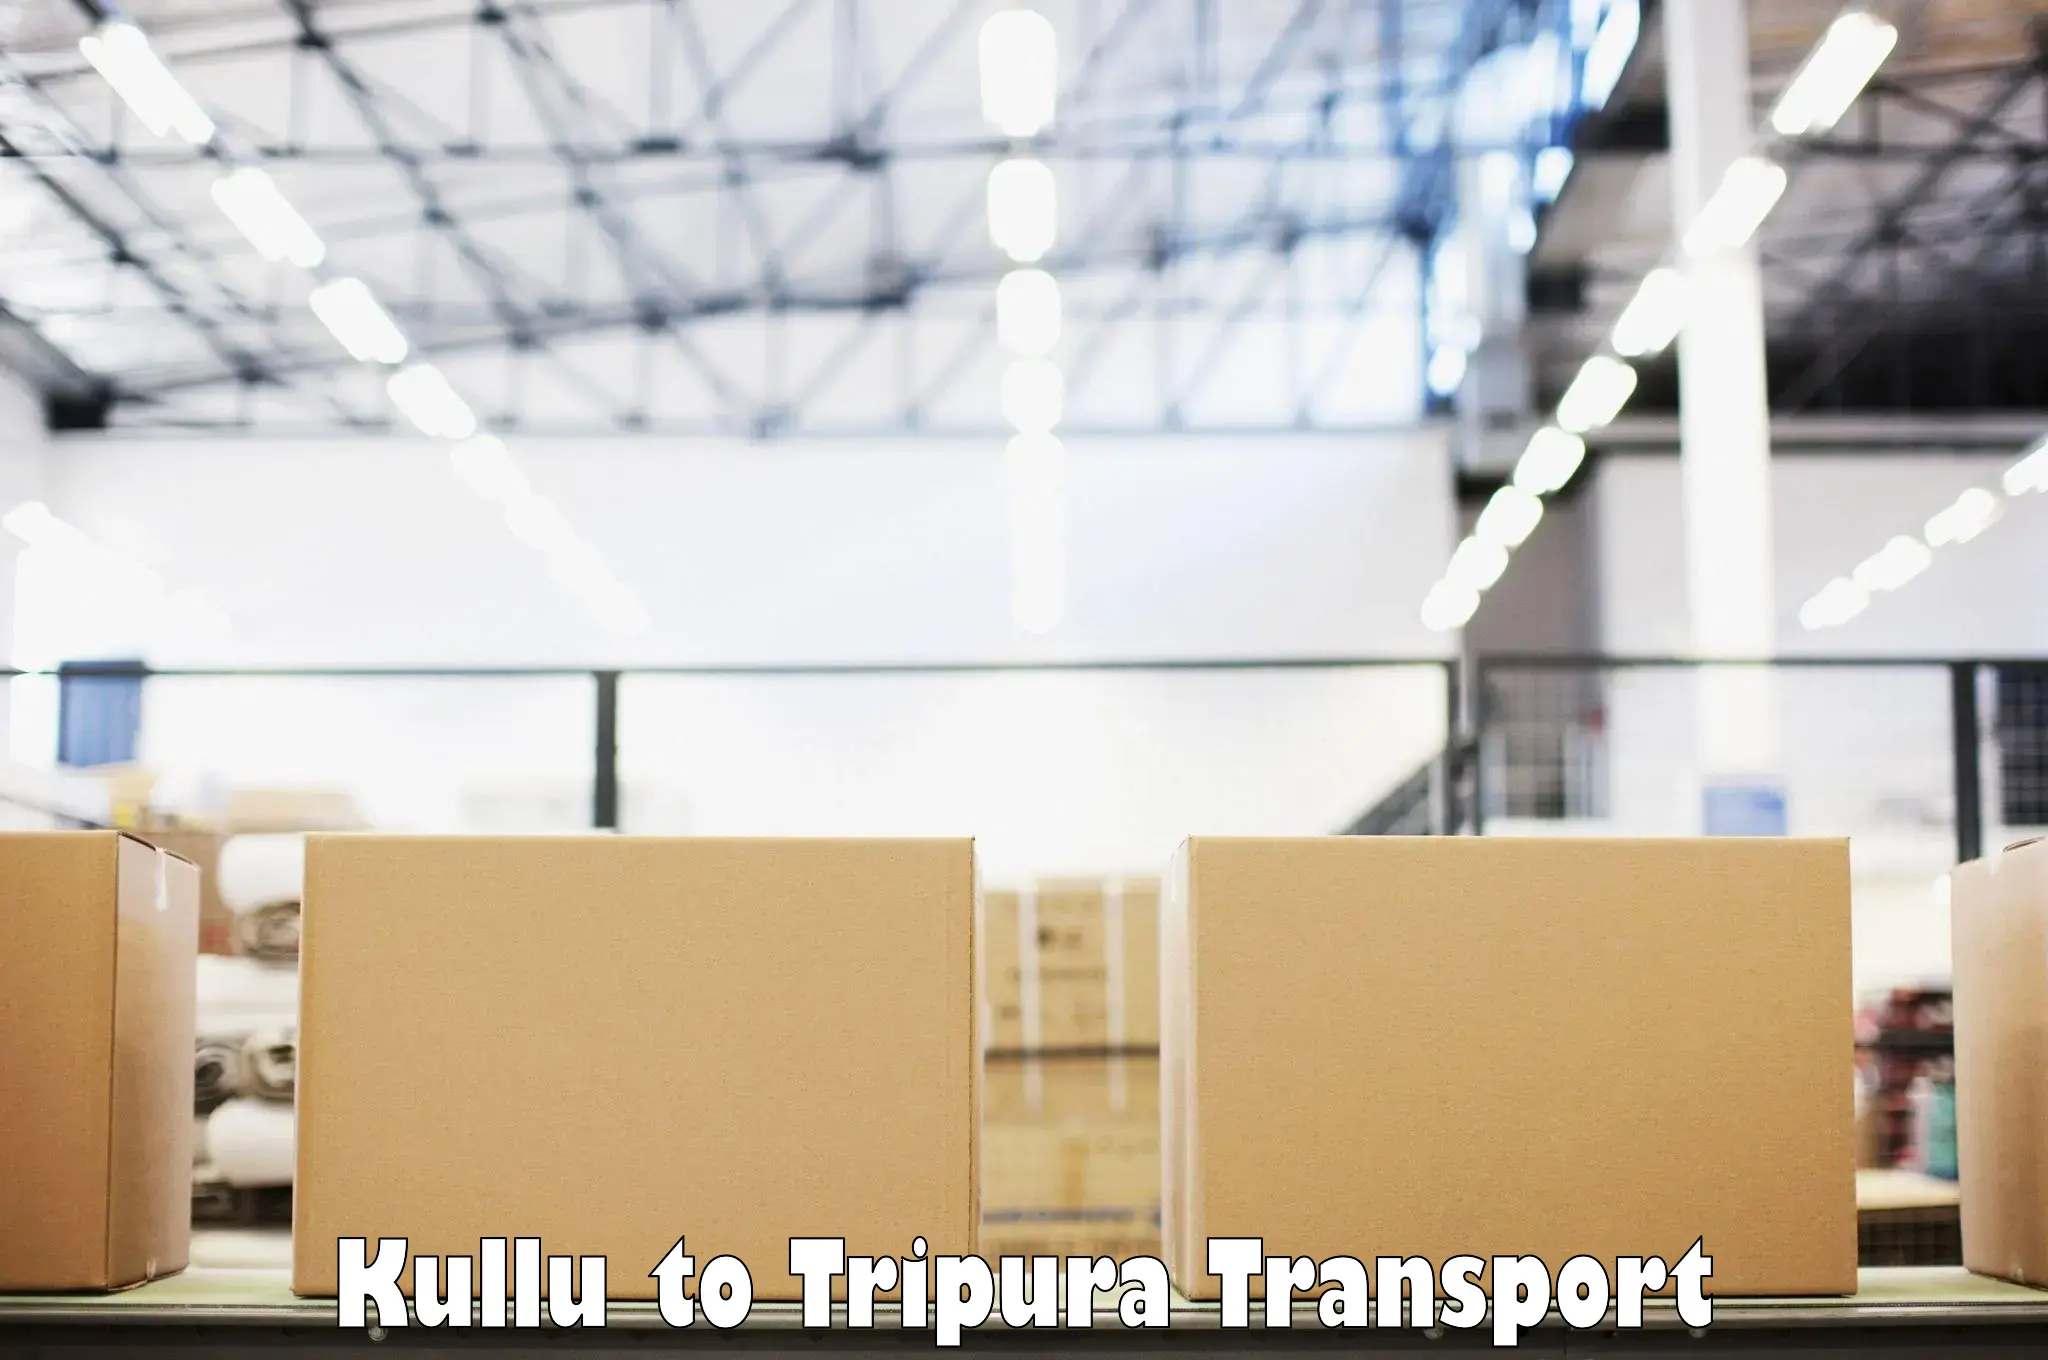 Lorry transport service Kullu to Manughat